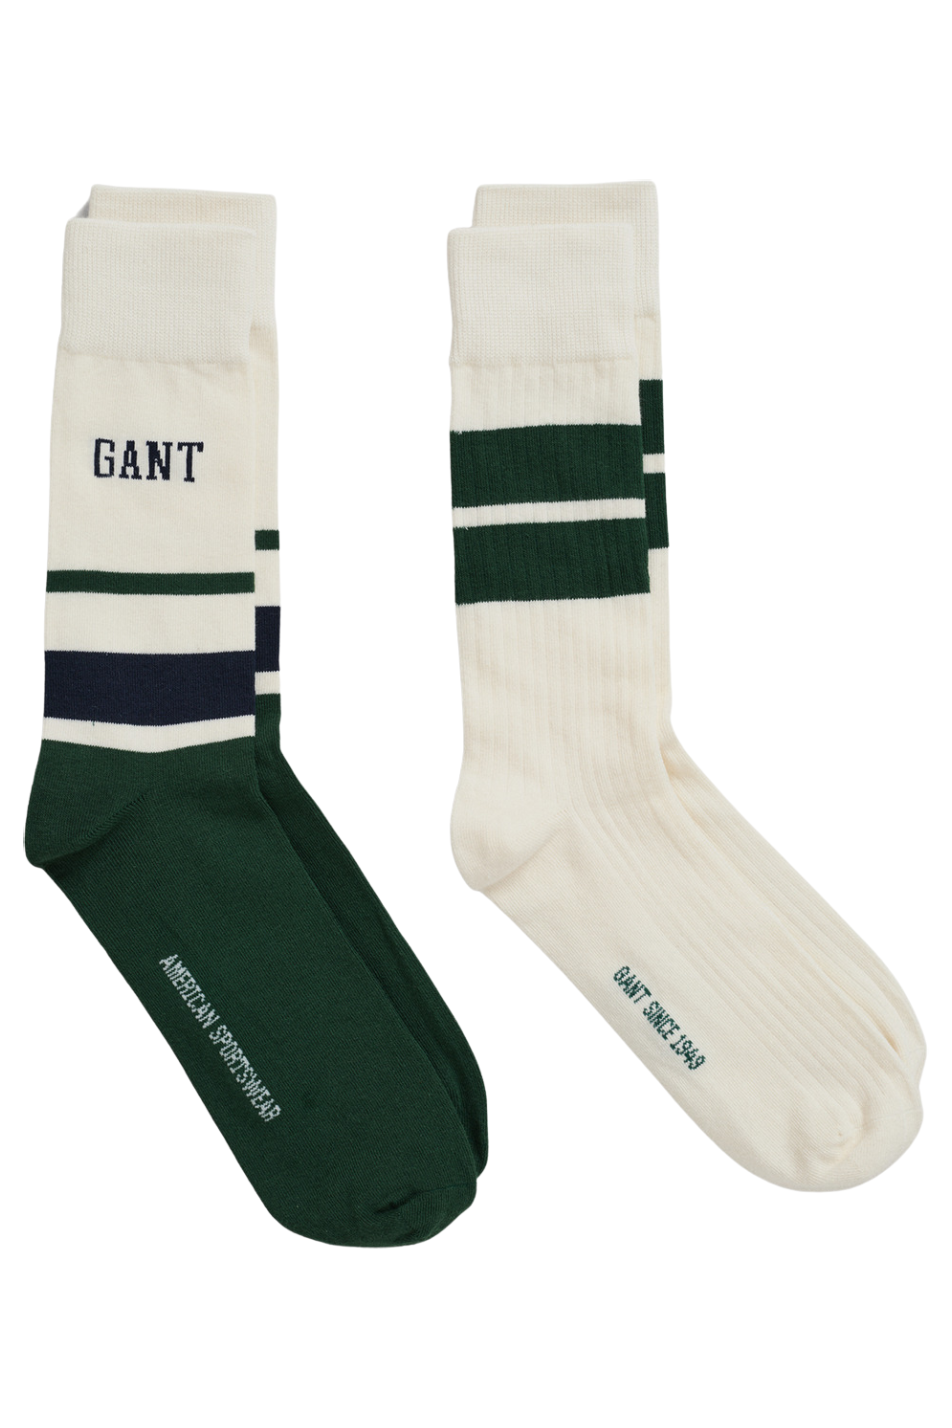 Gant 2 Pack Men's Sock